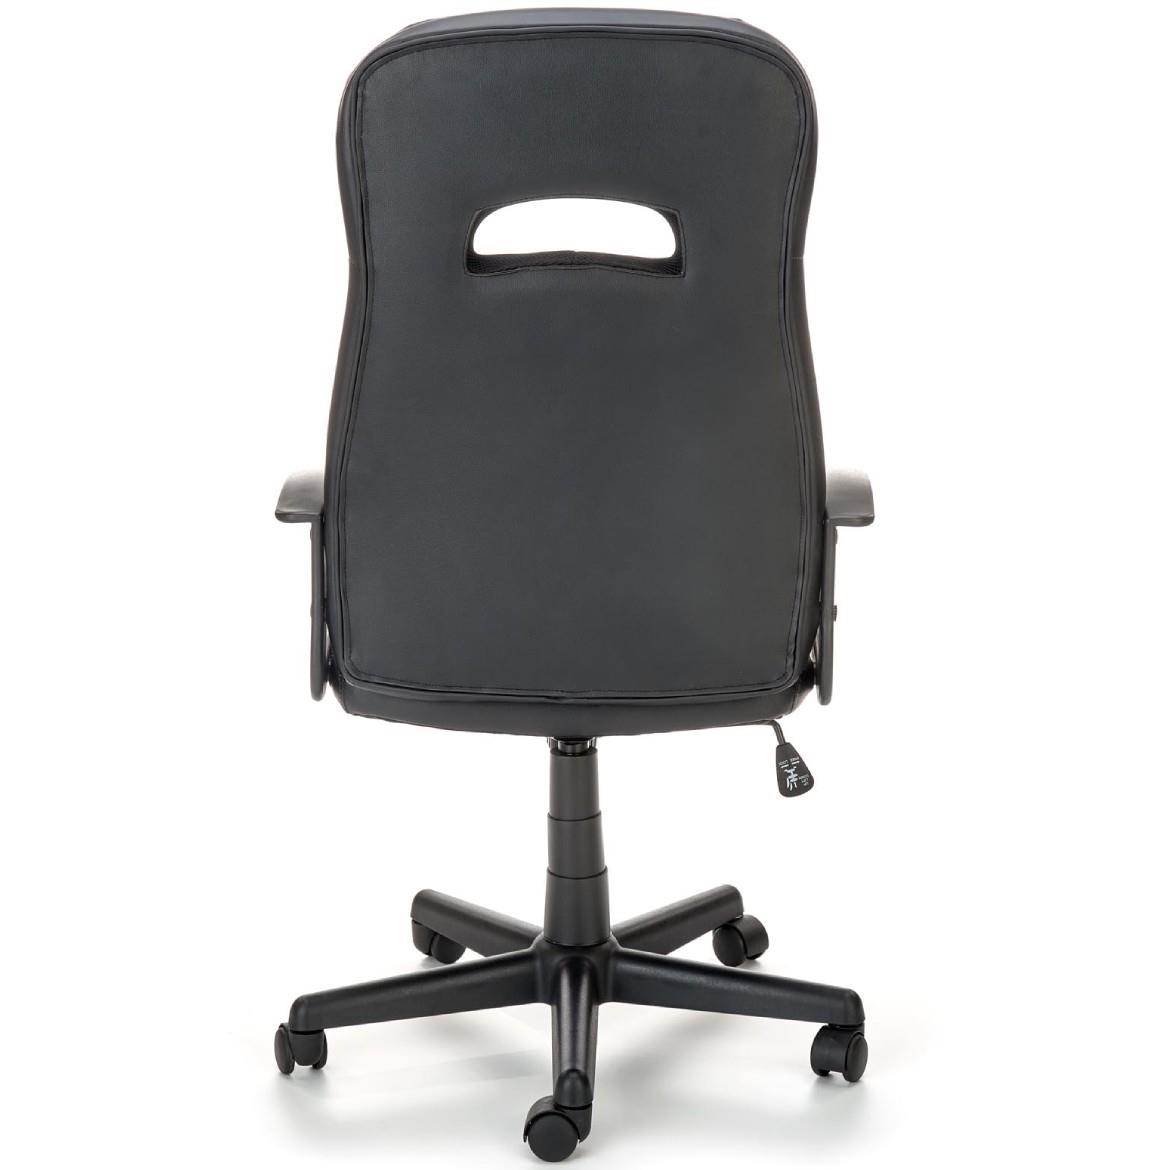 Castano kancelarijska fotelja 60x64x117 cm  siva/crna